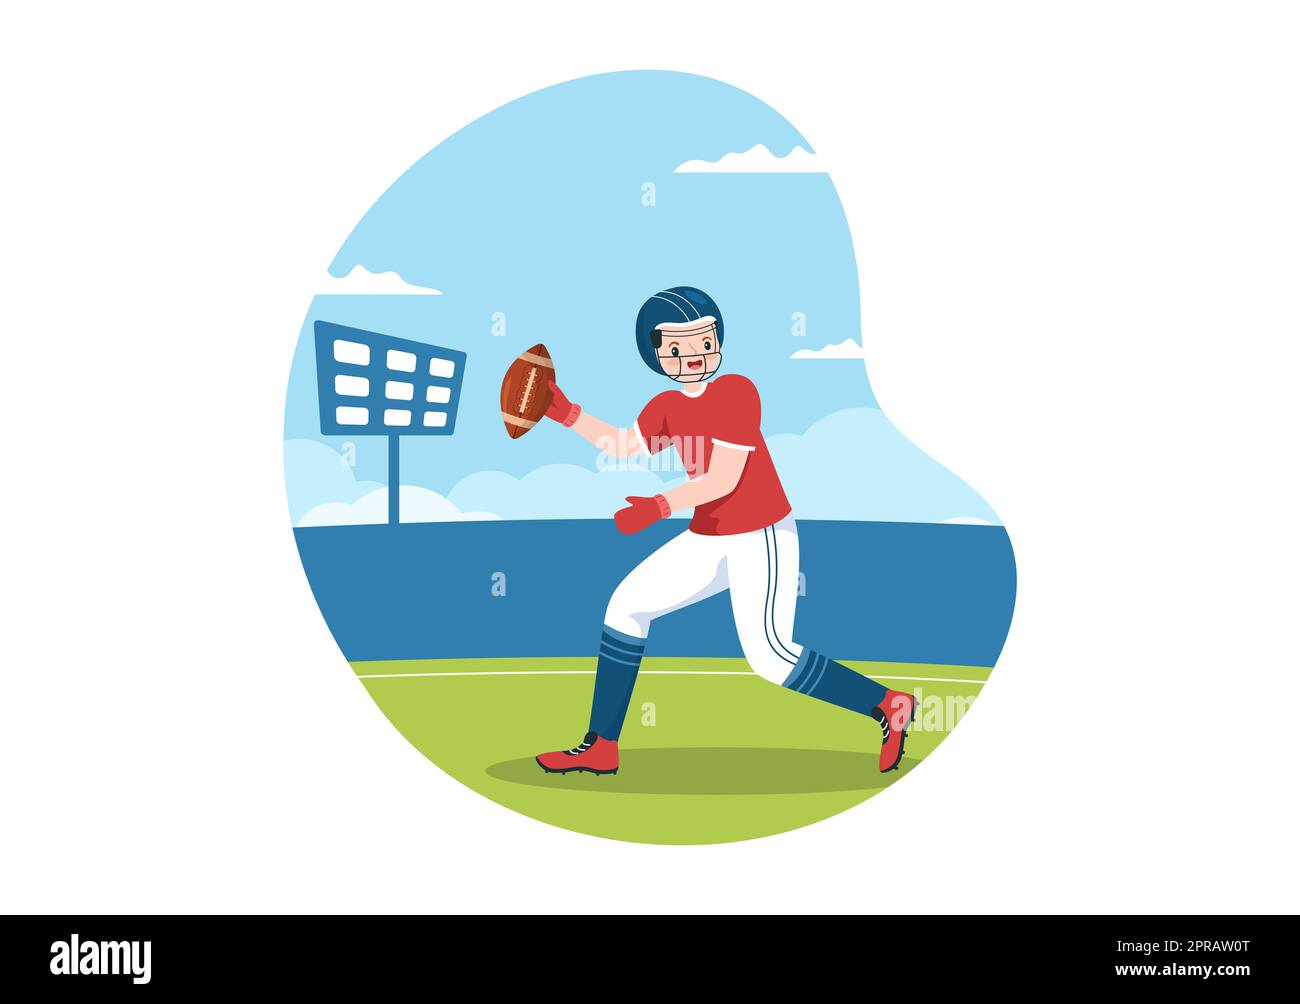 American Football Sports Player with the Game verwendet einen ovalen Ball und ist auf dem Feld von Hand gezeichnete Cartoon-flache Illustration braun Stockfoto